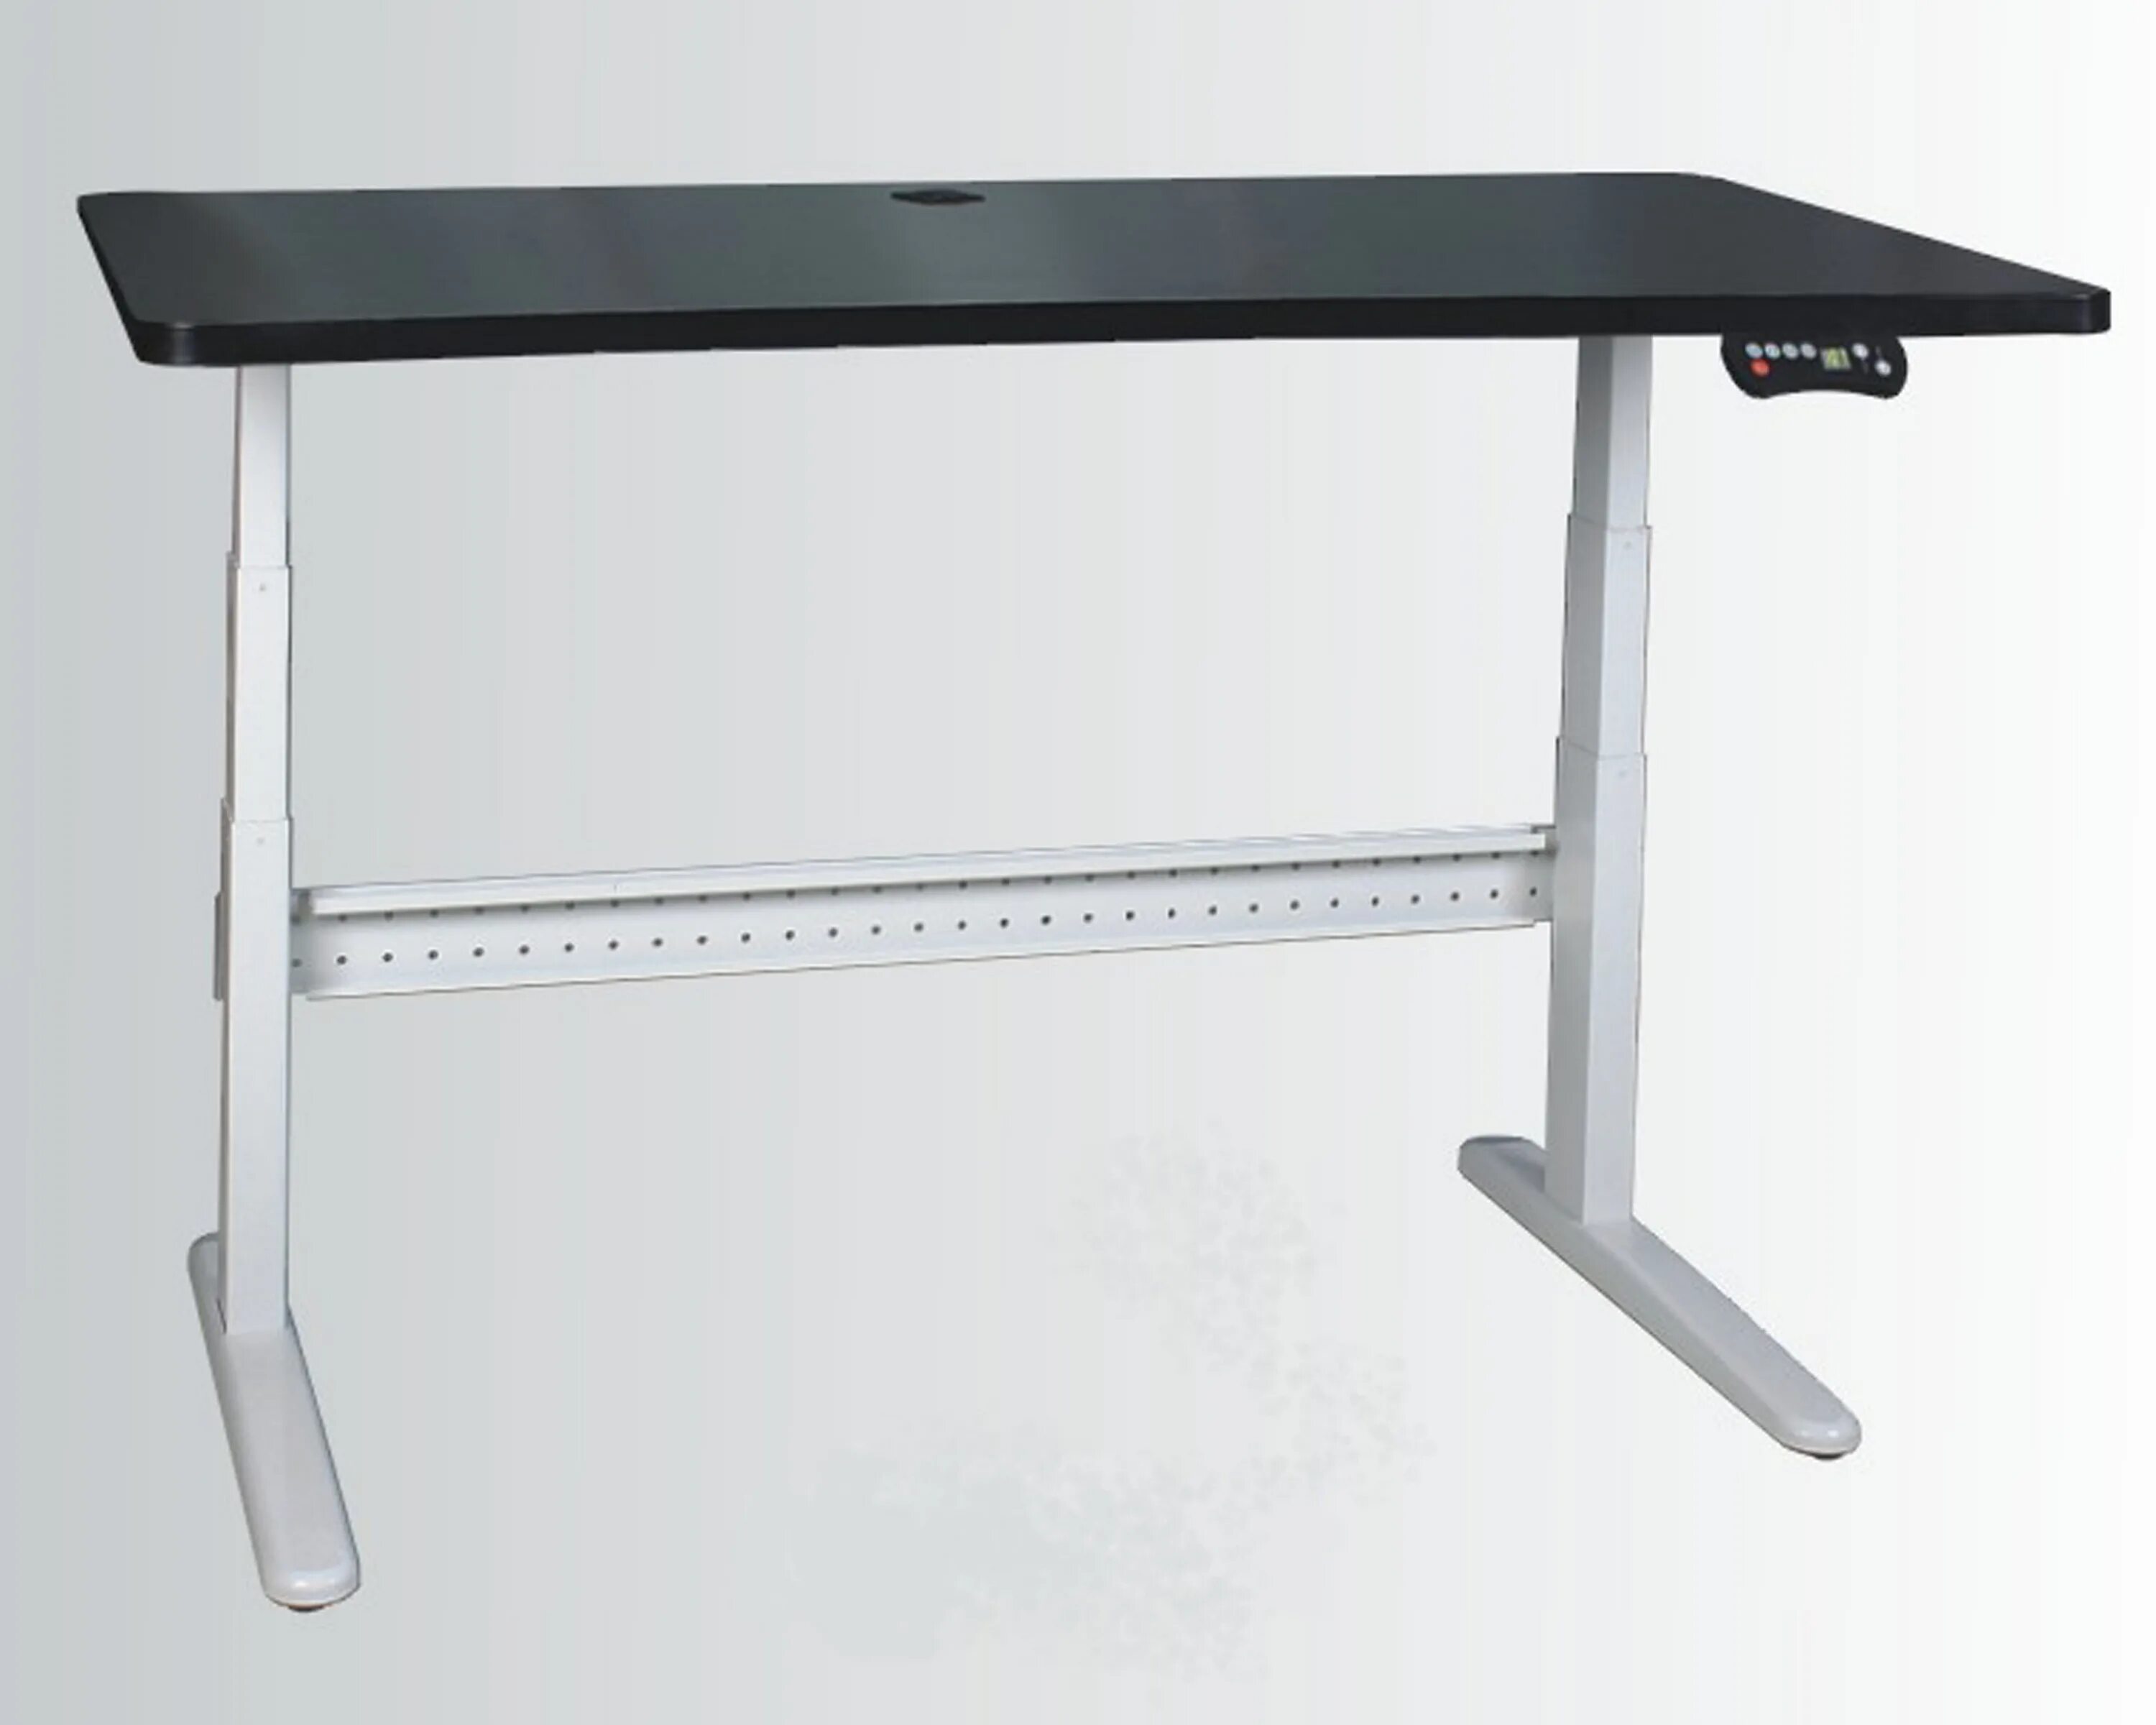 Стол с уровнем высоты. Zamm стол регулируемый. Стол регулируемый по высоте Ямагучи. Ikea стол регулируемый по высоте. Стол икеа который регулируется по высоте.